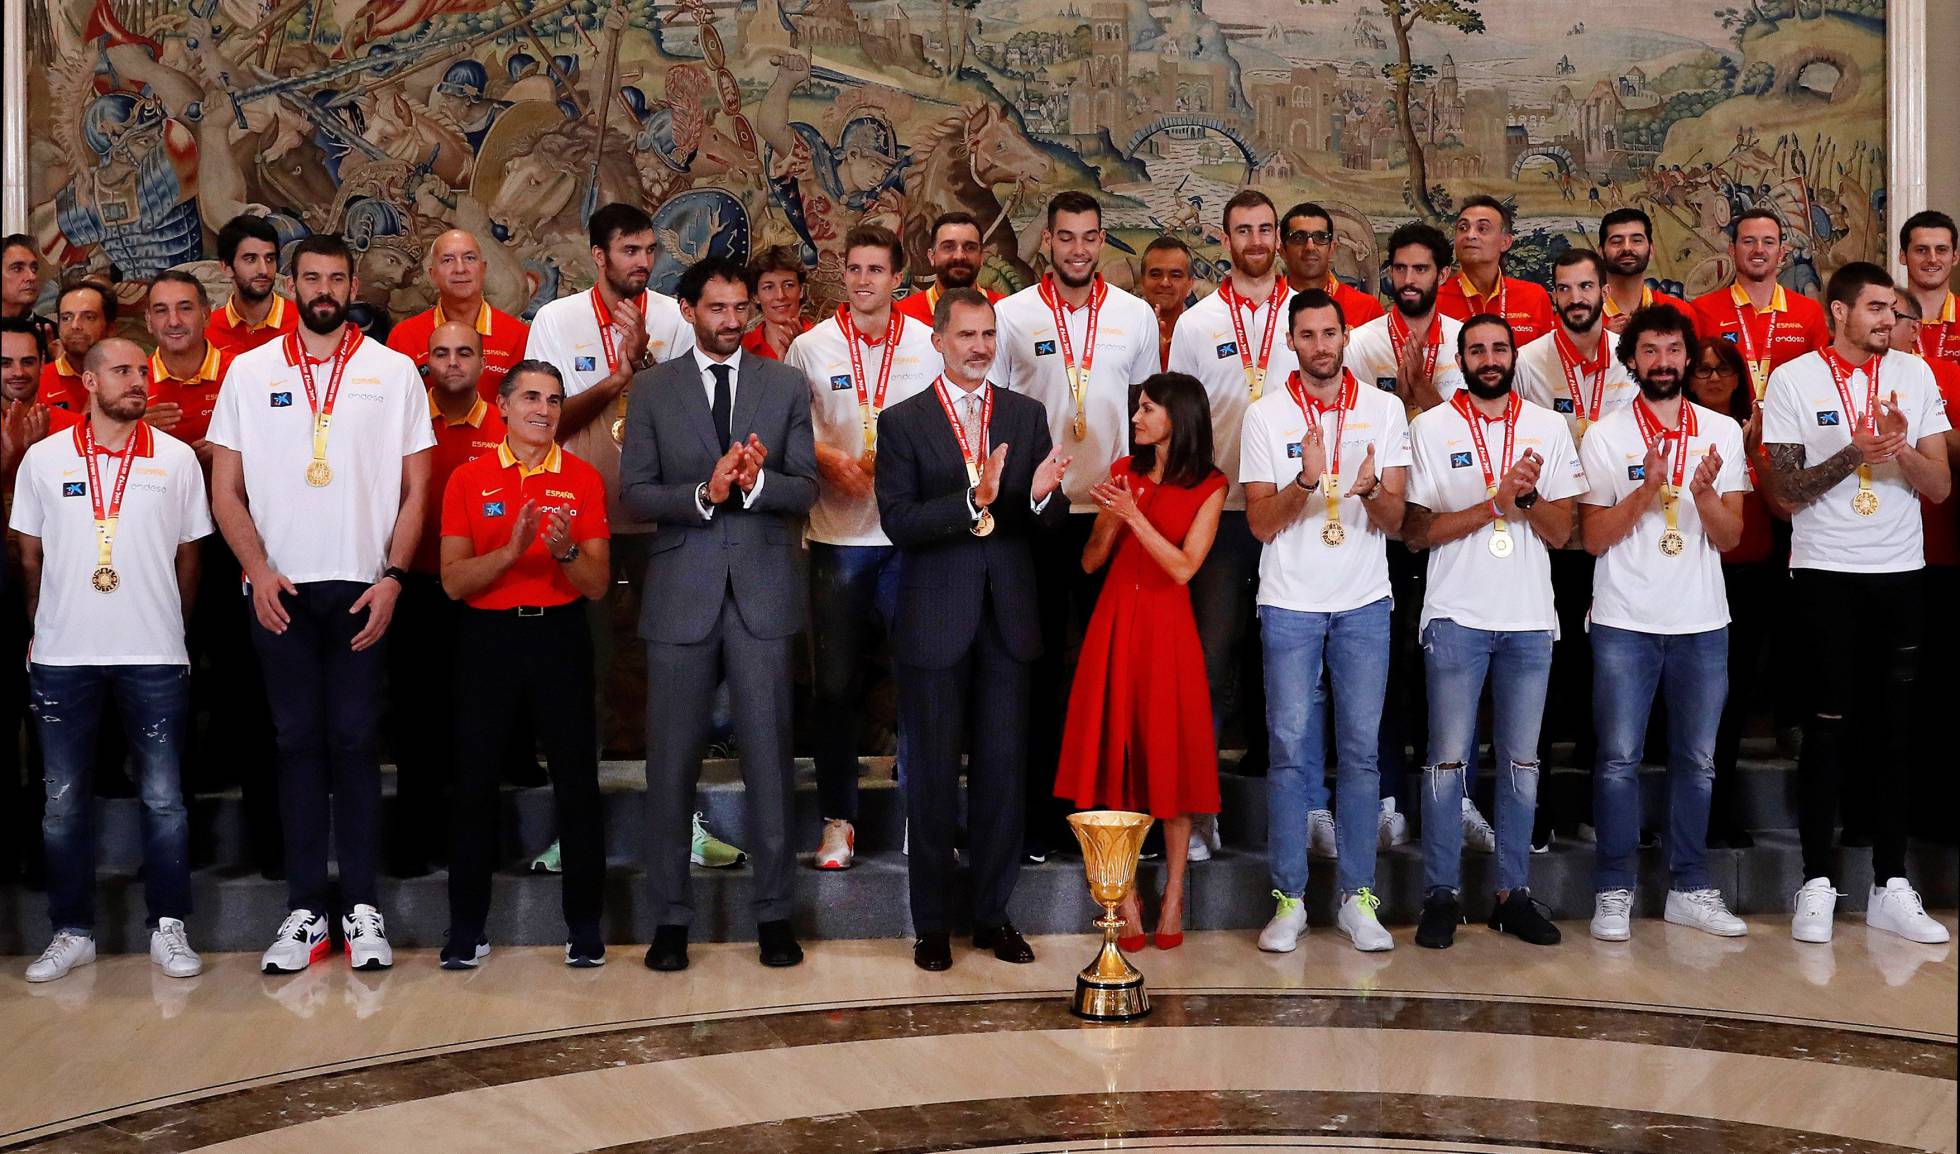 Asimilar grua Definir Fotos: Celebración del triunfo de la Selección Española en el Mundial de  Baloncesto, en imágenes | Deportes | EL PAÍS